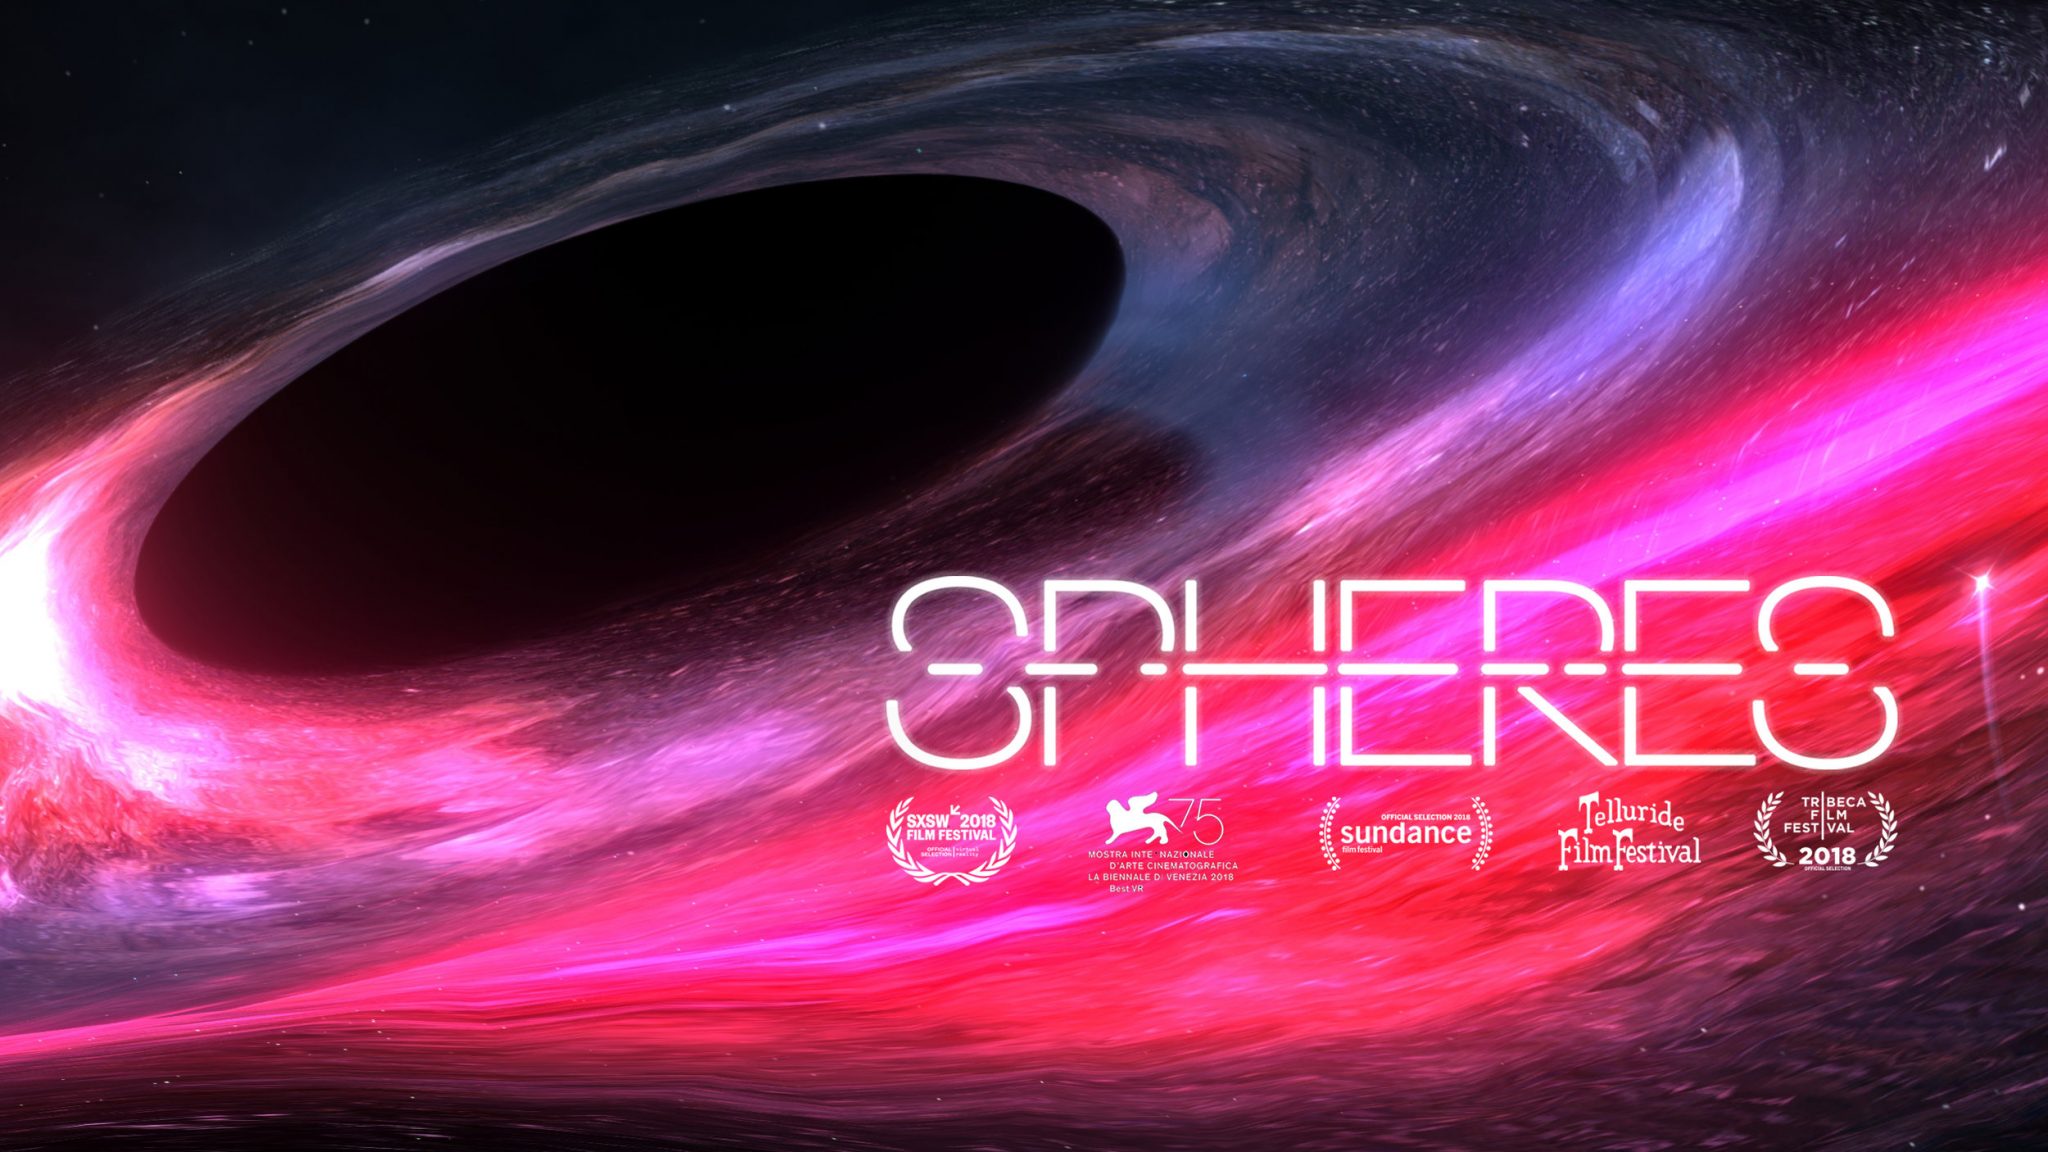 带有手部跟踪的VR电影《Spheres》即将登陆Oculus Quest